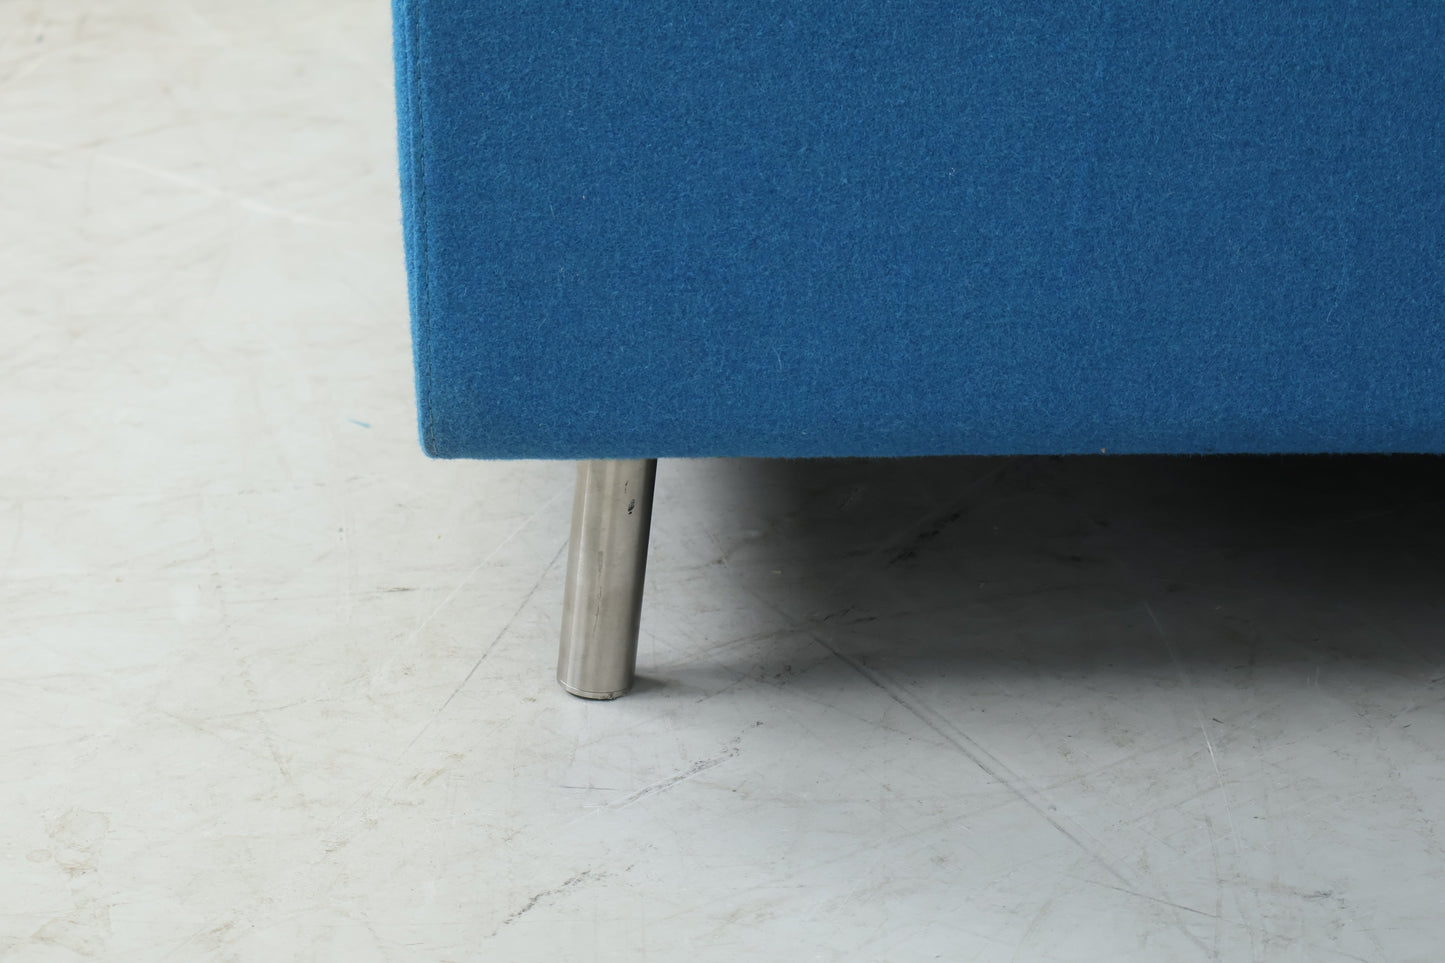 Nyrenset | Blå Bolia Scandinavia sofa med sjeselong i ull